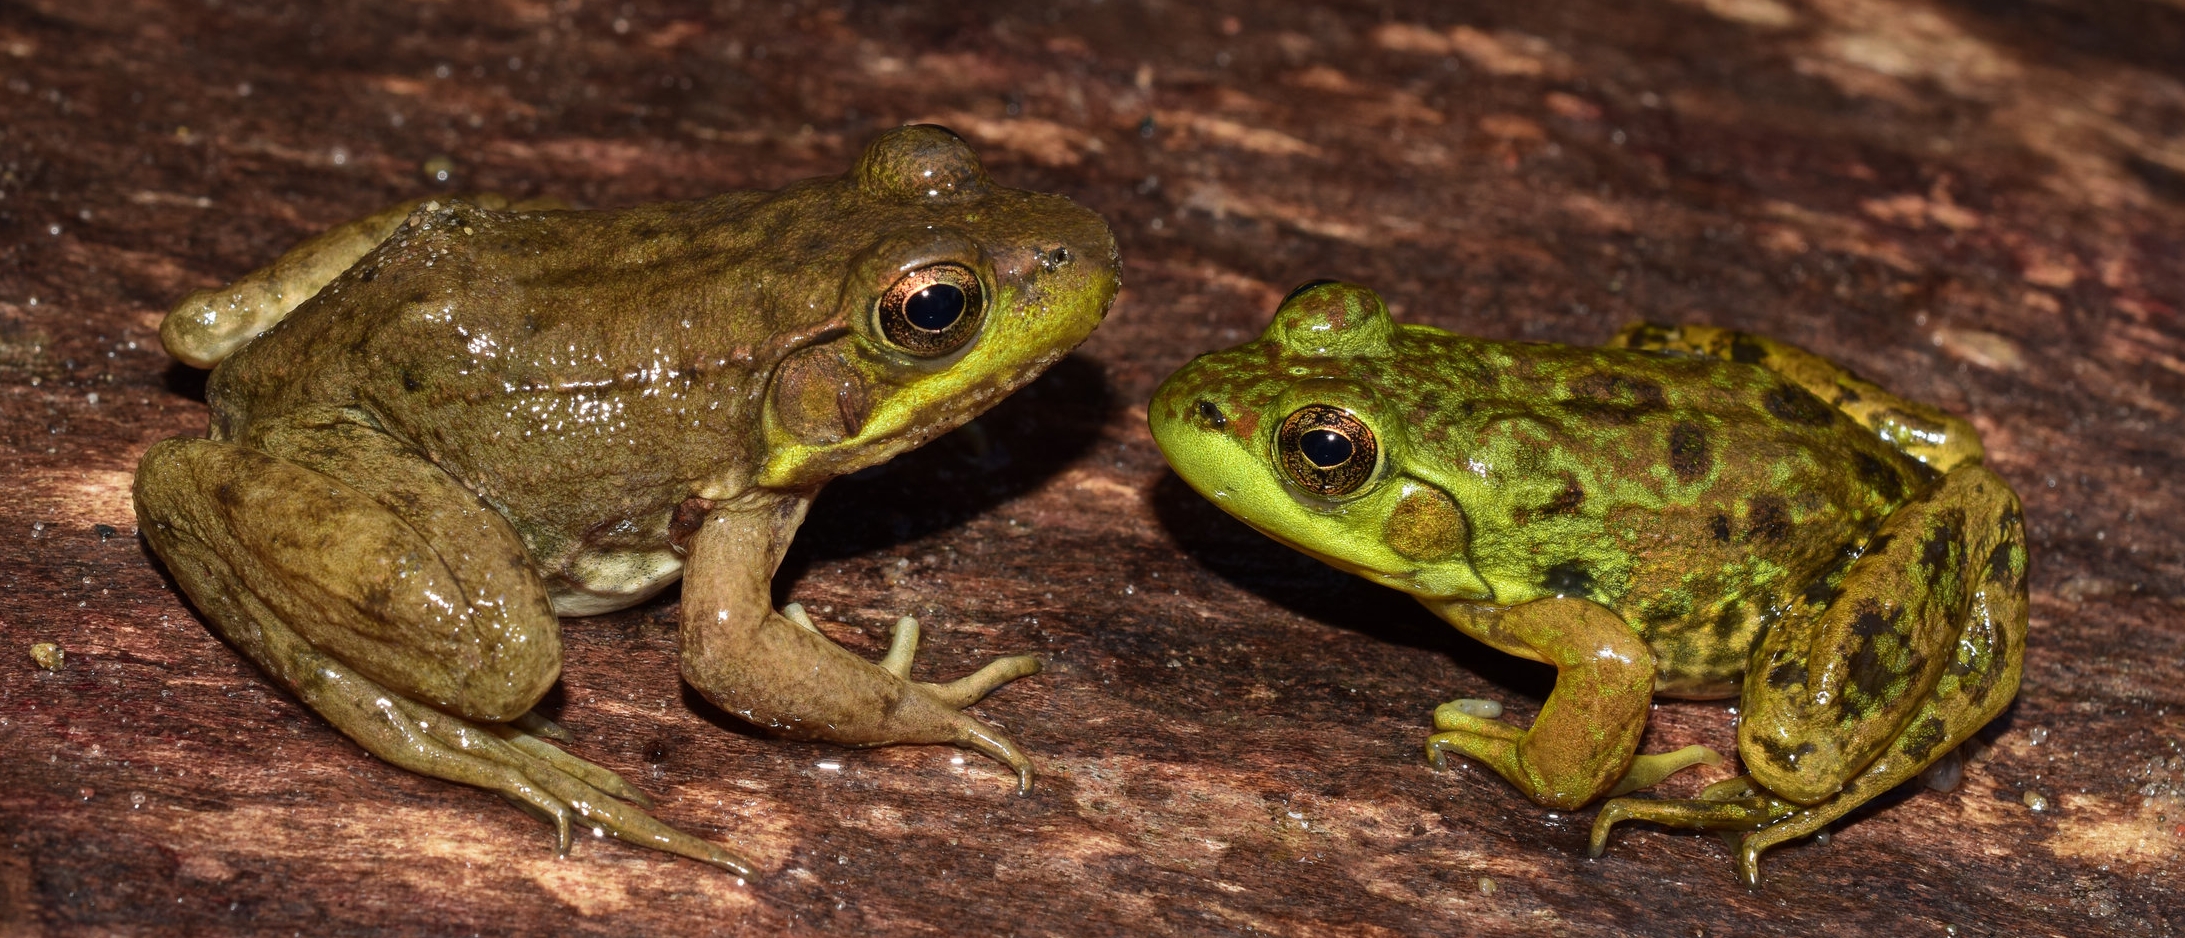 左图:绿蛙(Lithobates clamitans)。右图:水貂蛙(石竹)。照片:克里斯托万博电竞提现要五万认证弗·e·史密斯